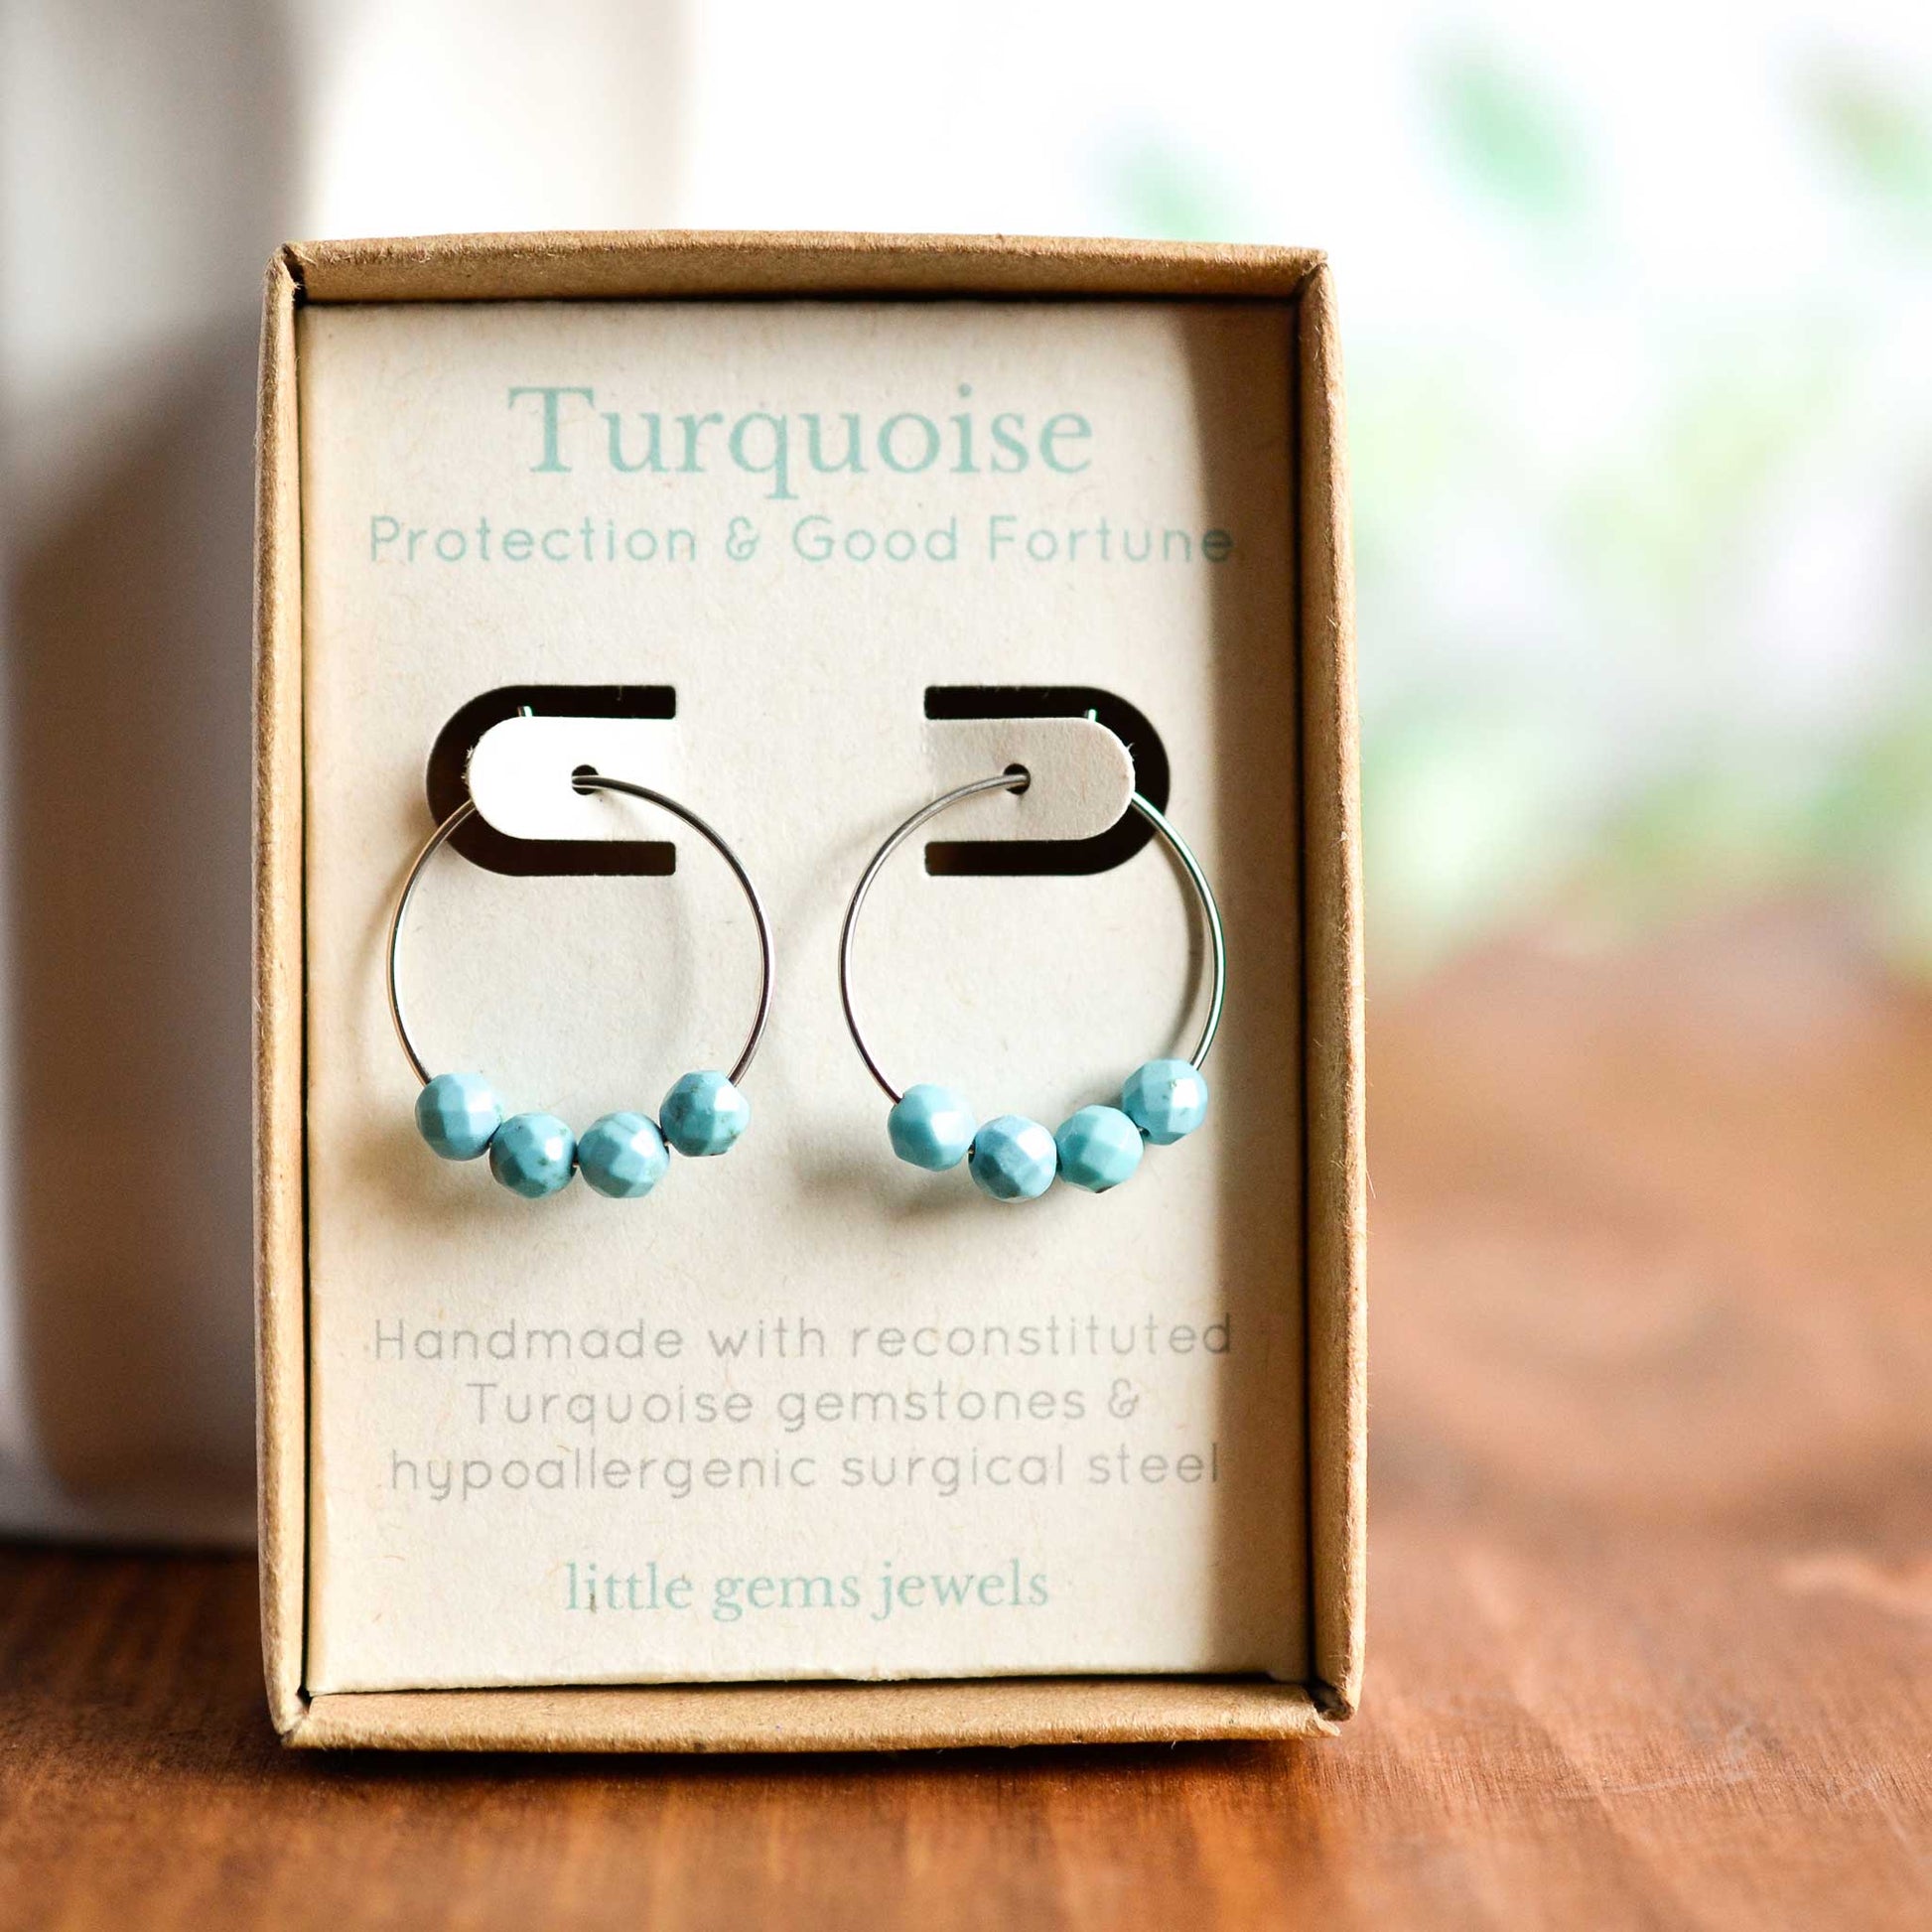 Turquoise gemstone hoop earrings in gift box